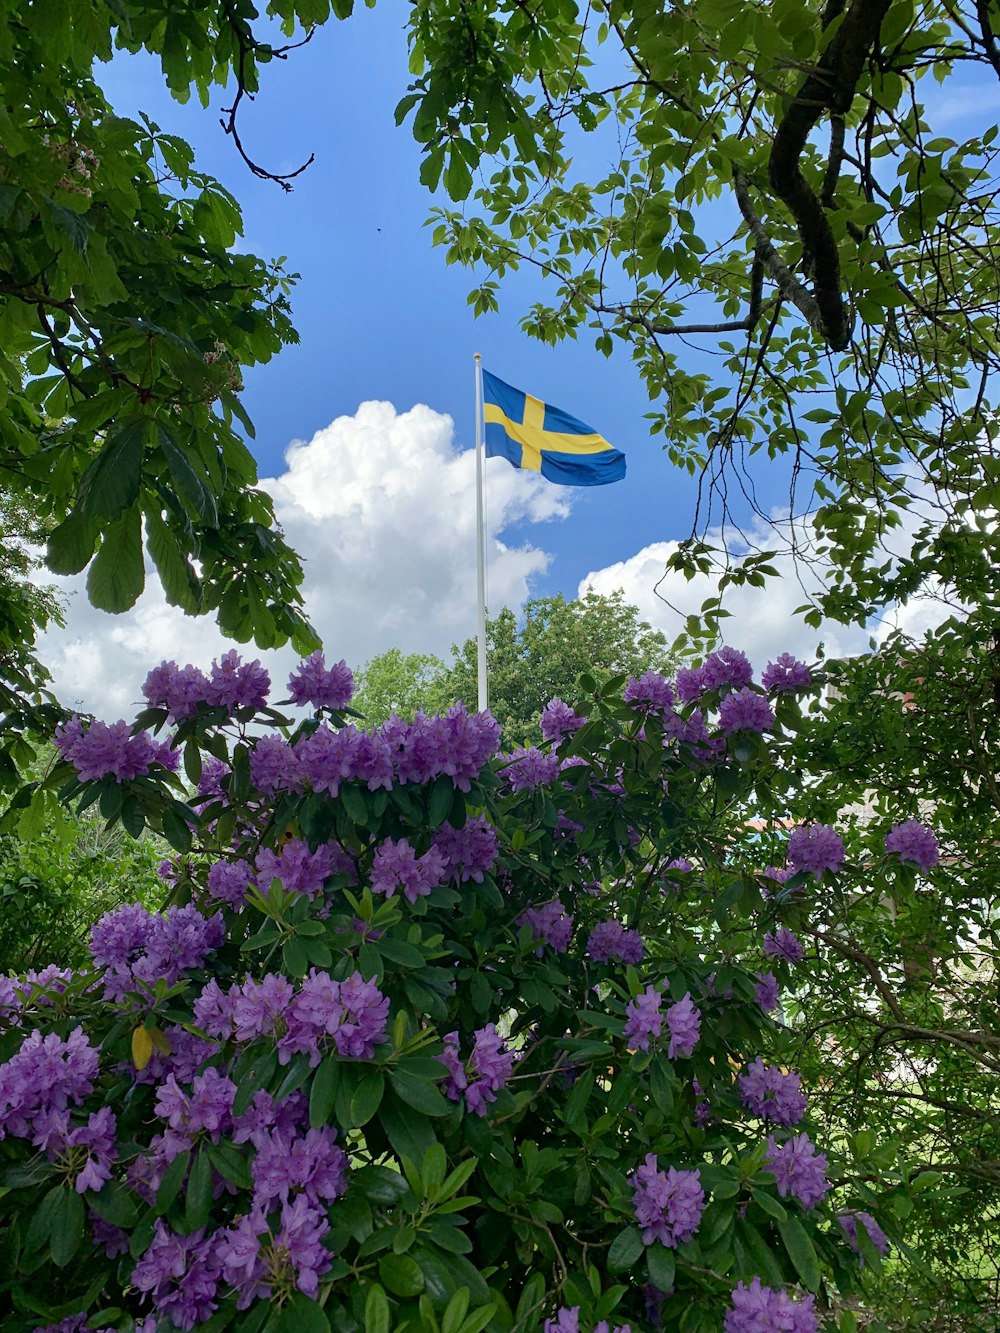 bandiera blu con croce gialla al centro vicino a cespugli di fiori viola